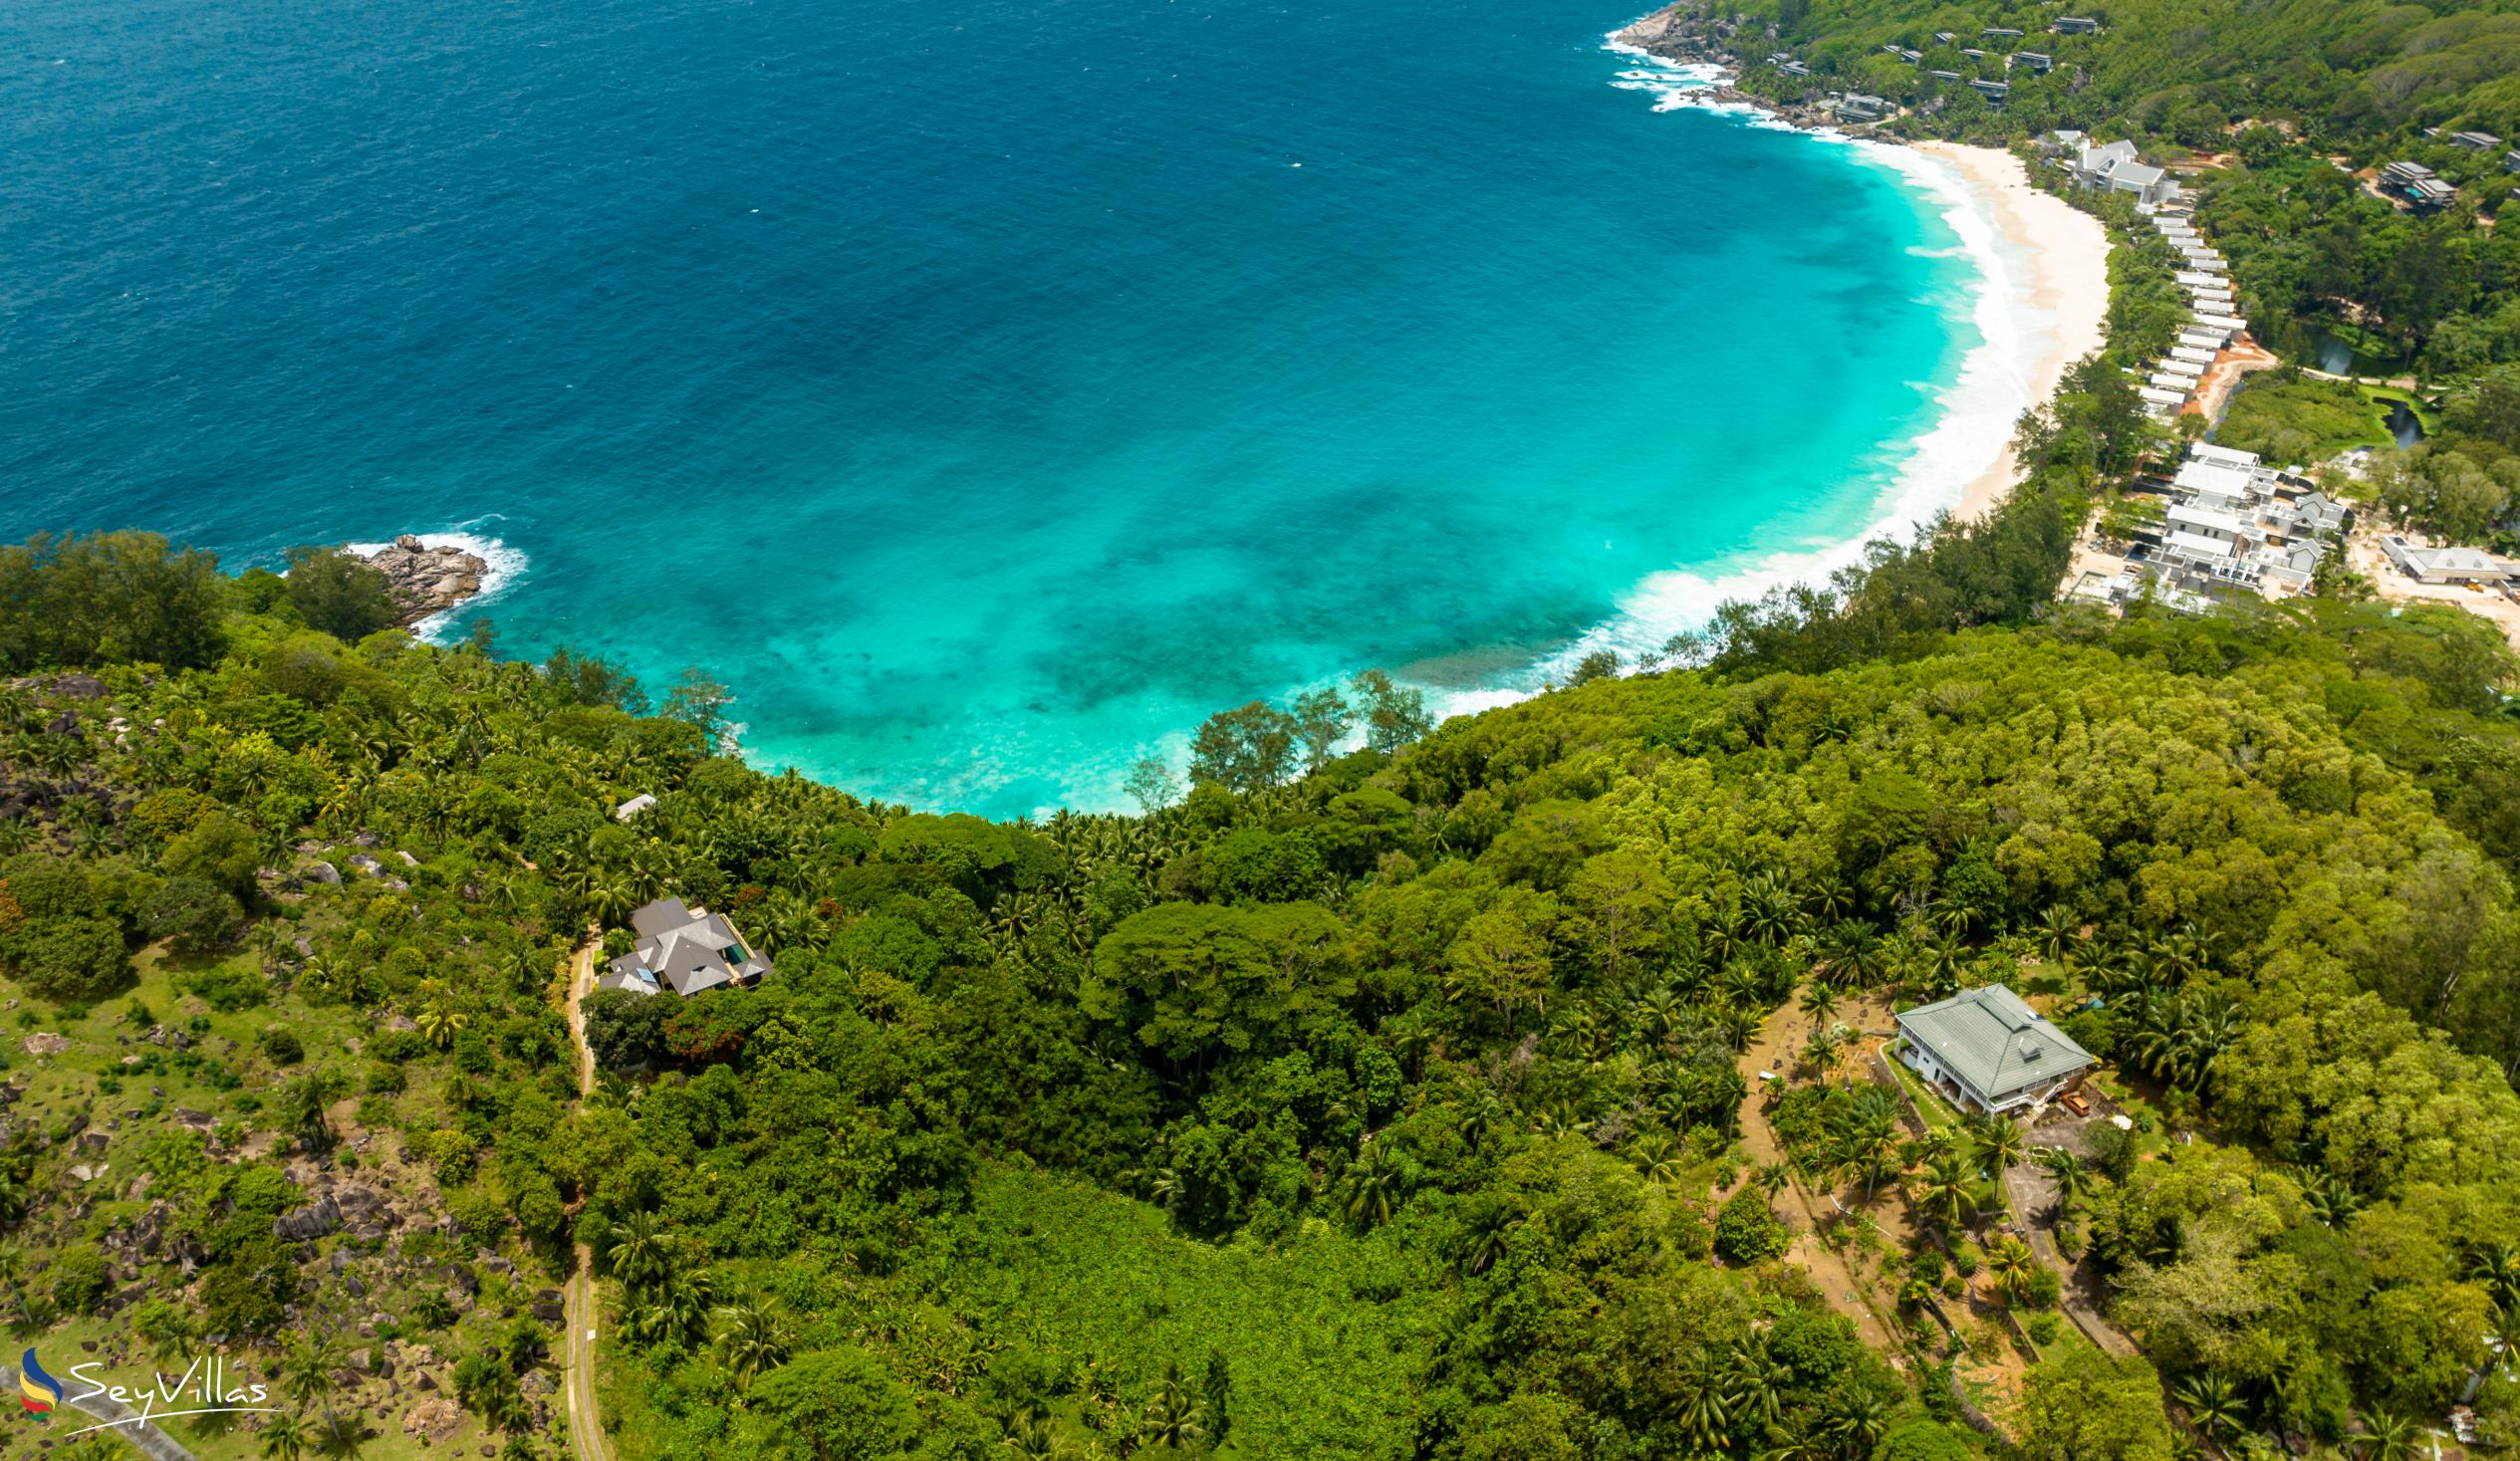 Foto 64: Villa Gazebo - Posizione - Mahé (Seychelles)